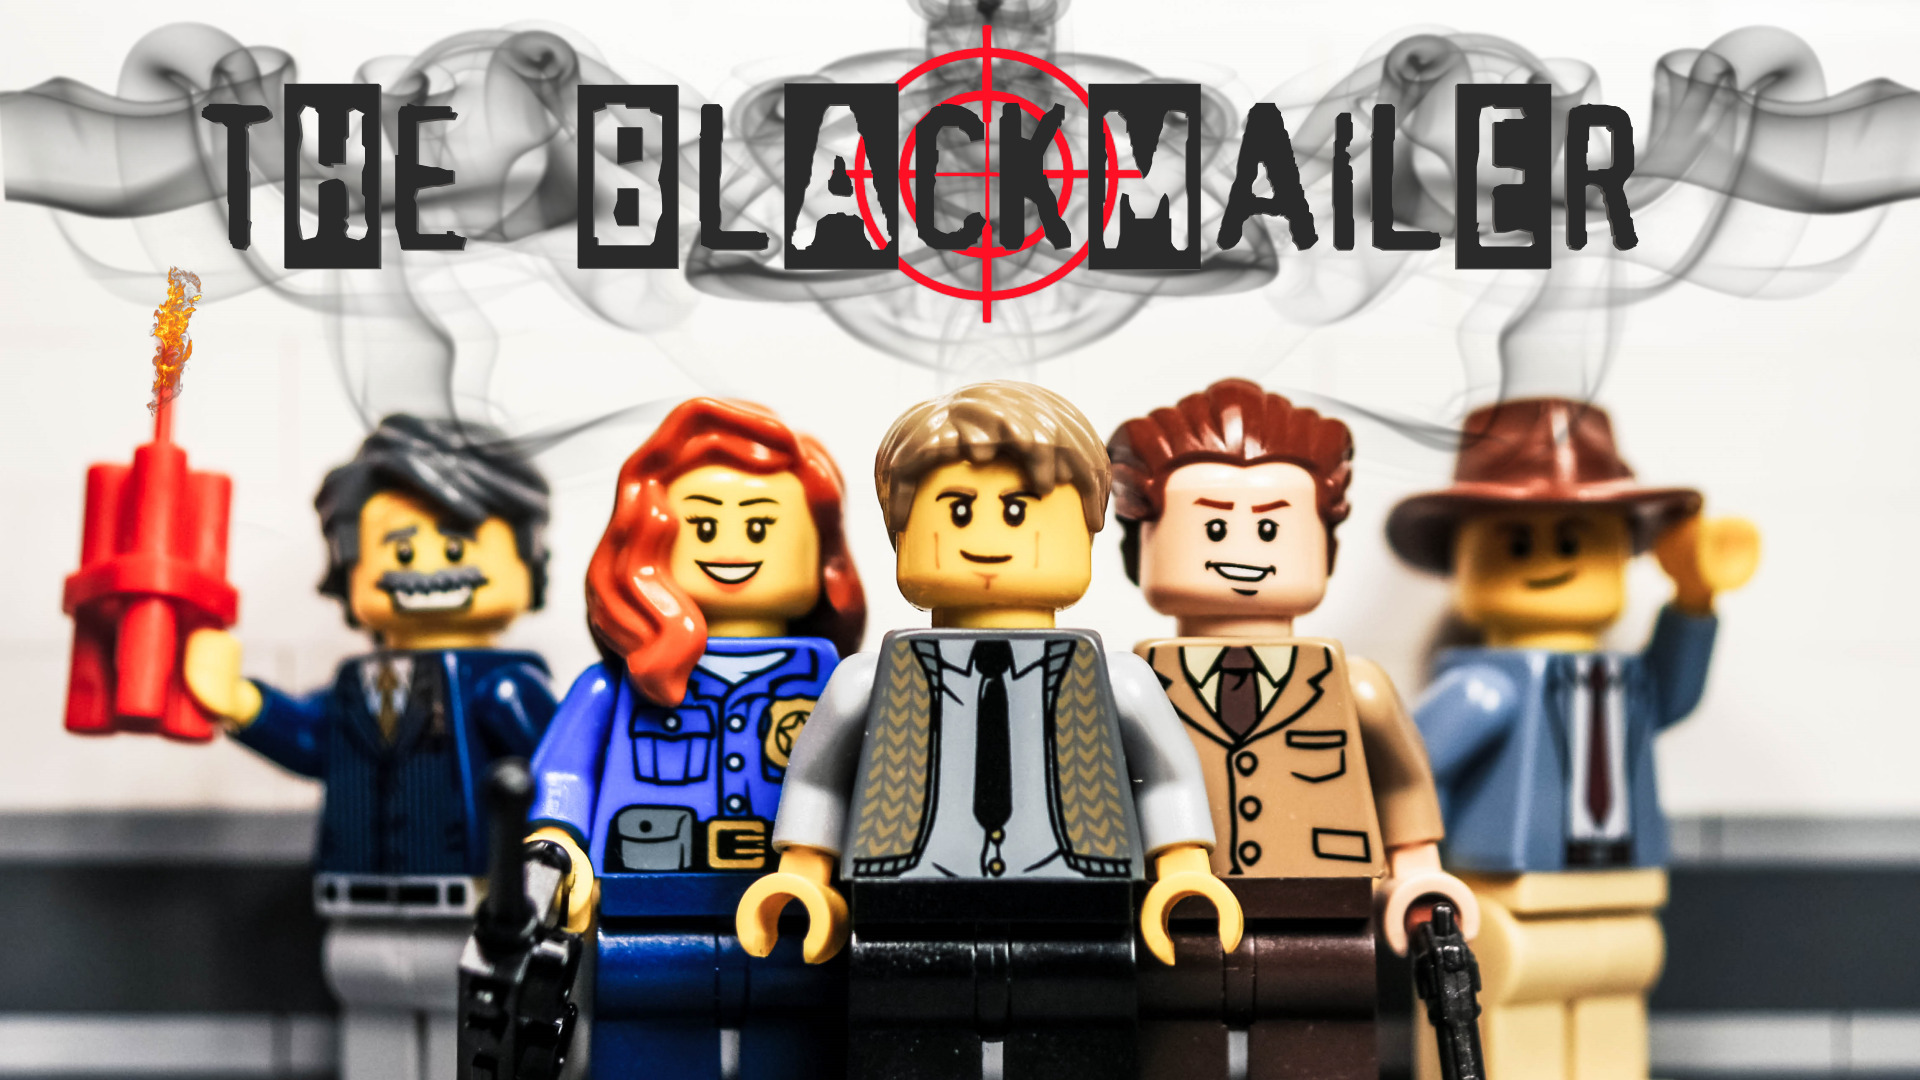 The Blackmailer (LEGO thriller movie)